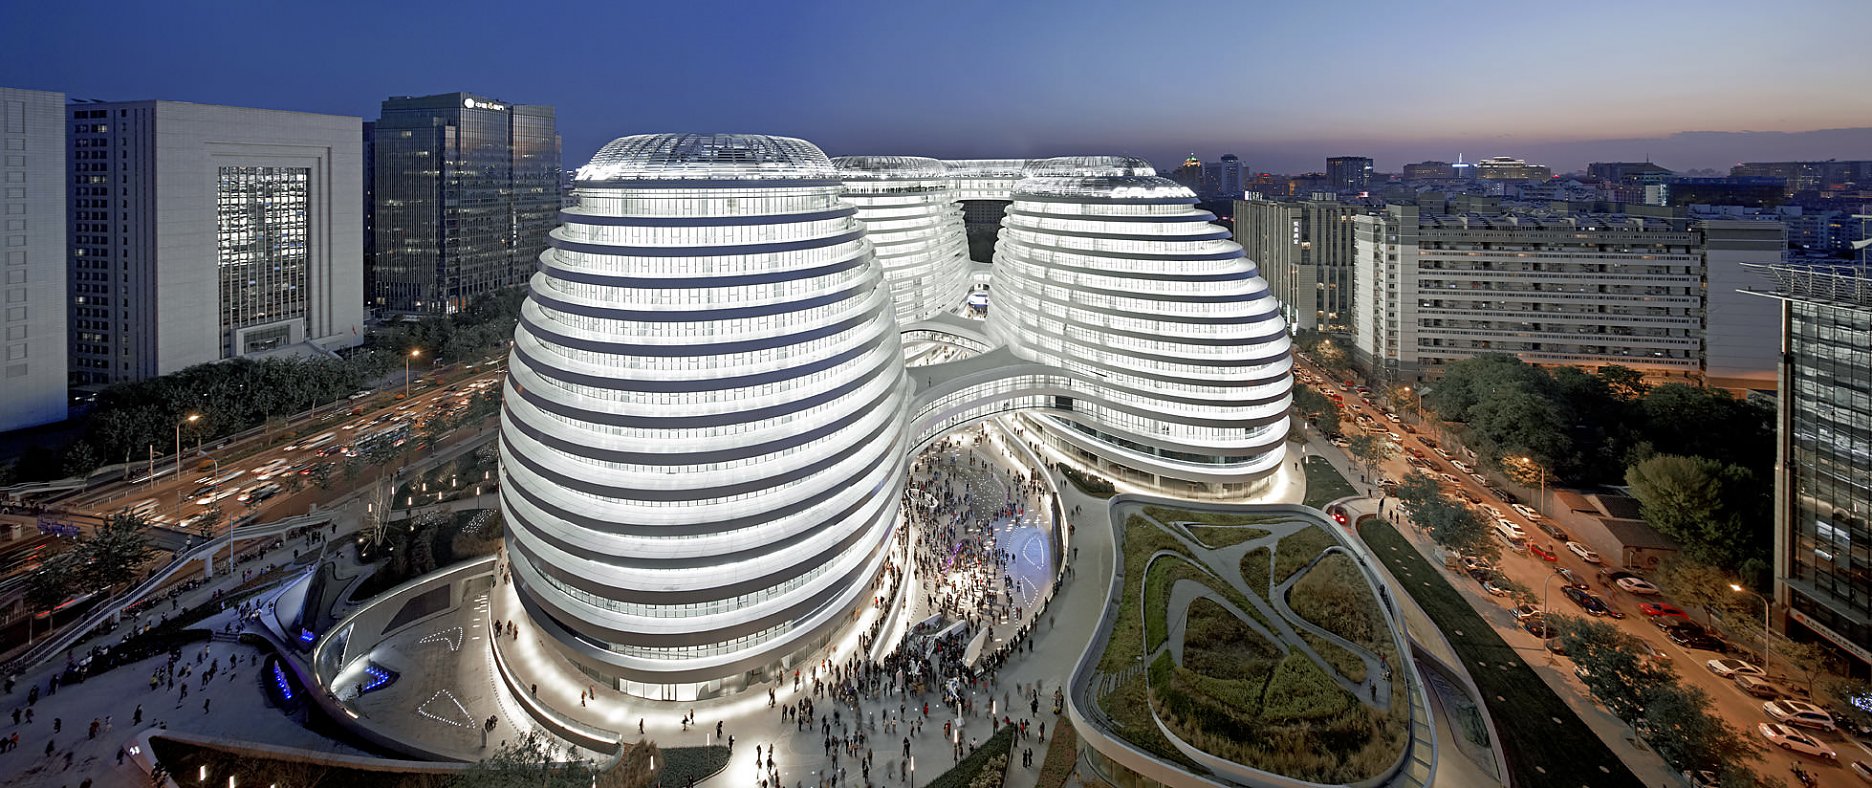 Zaha Hadid Architects - Galaxy Soho, Peking